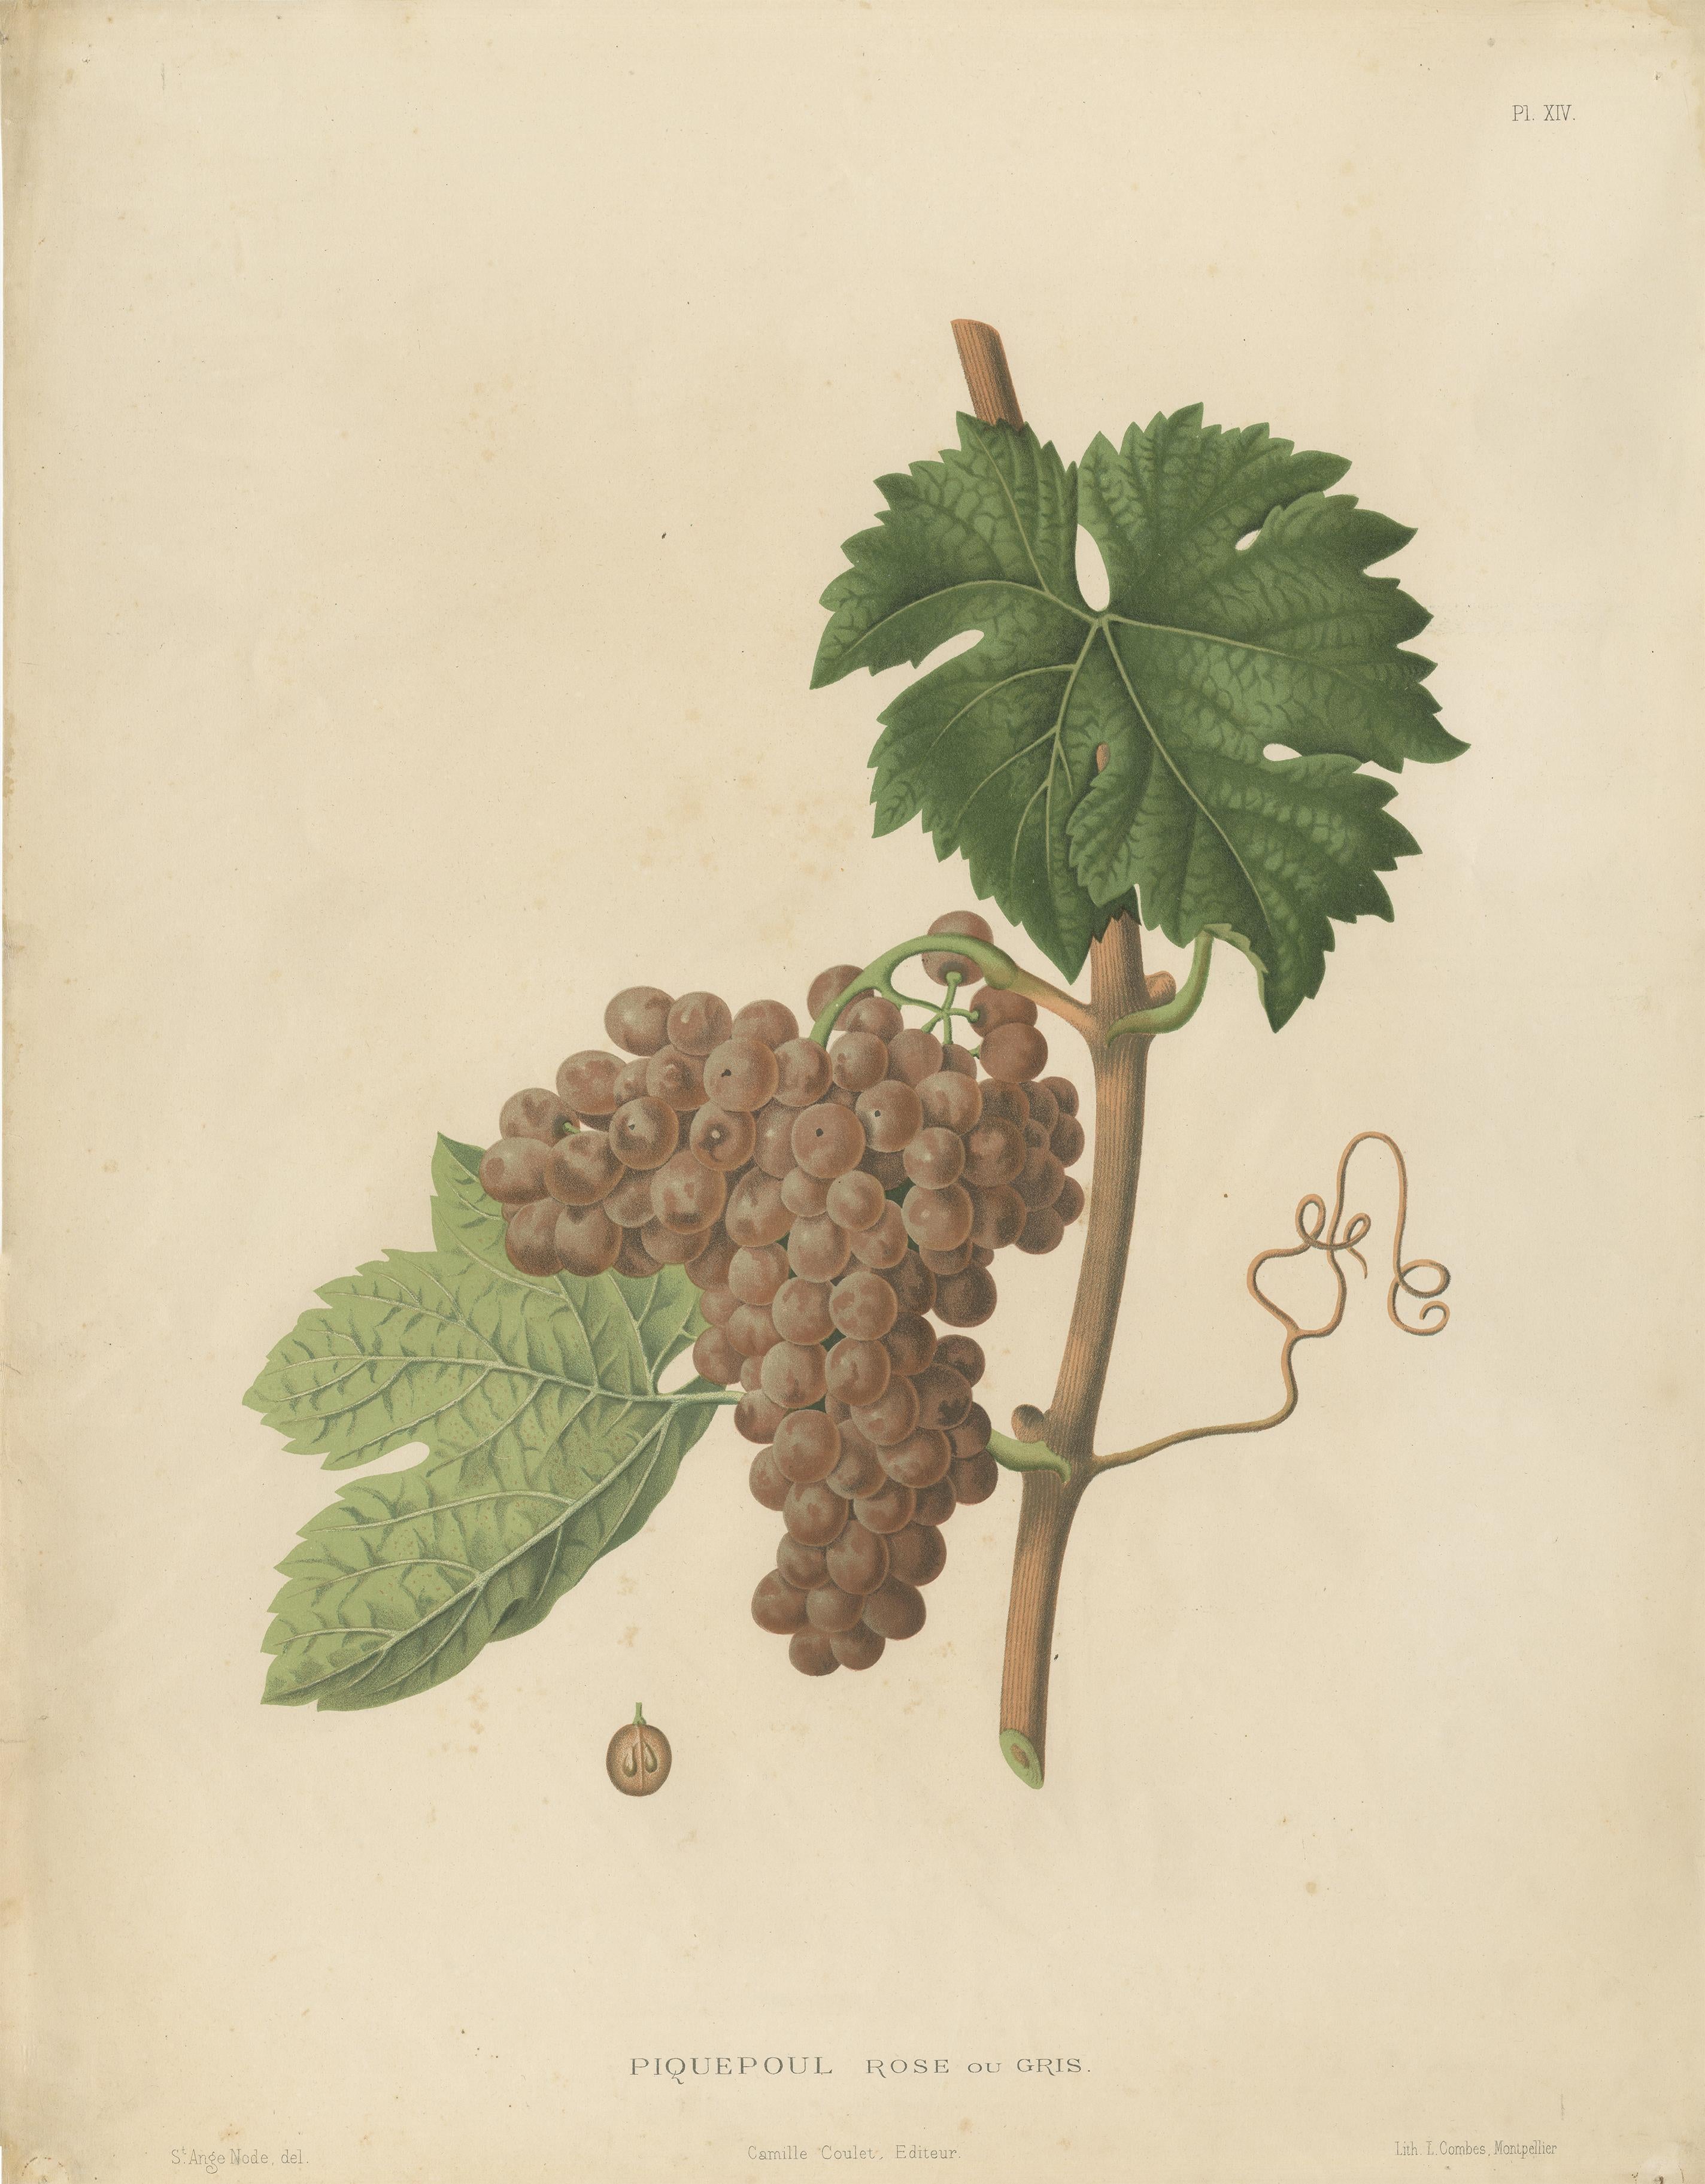 Belle et décorative grande lithographie de la variété de raisin Piquepoul. 

Une belle impression à avoir sur le mur pour tout amateur de vin. Original coloré à la main au 19ème siècle.

Extrait de l'ouvrage : 